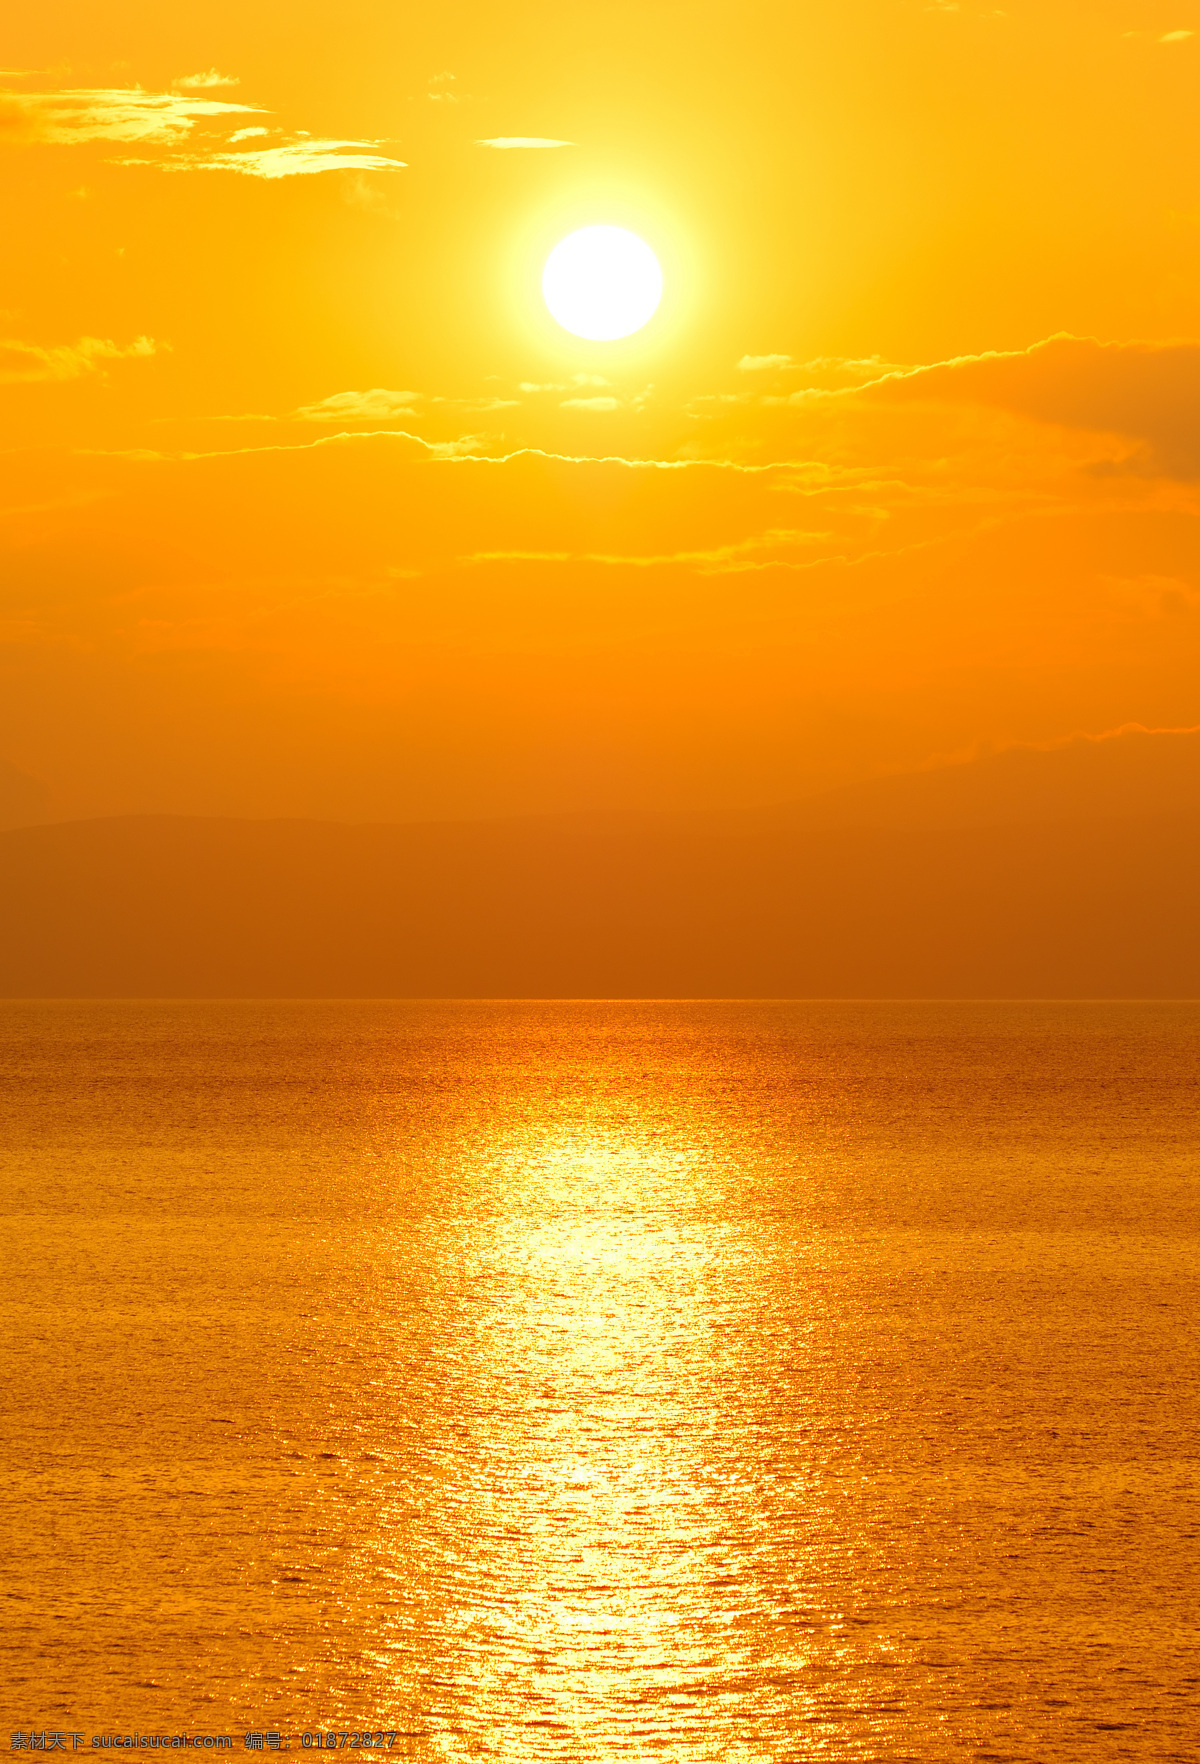 海上日出 海上 日出 金黄色 海边 夕阳红 太阳 海水 海滩 气魄 美丽 自然 大气 大方 旭日东升 辉煌 黄色 成就 水天相接 潮汐 阳光 射线 日出东方 海边日出 广告 广告牌 自然风景 自然景观